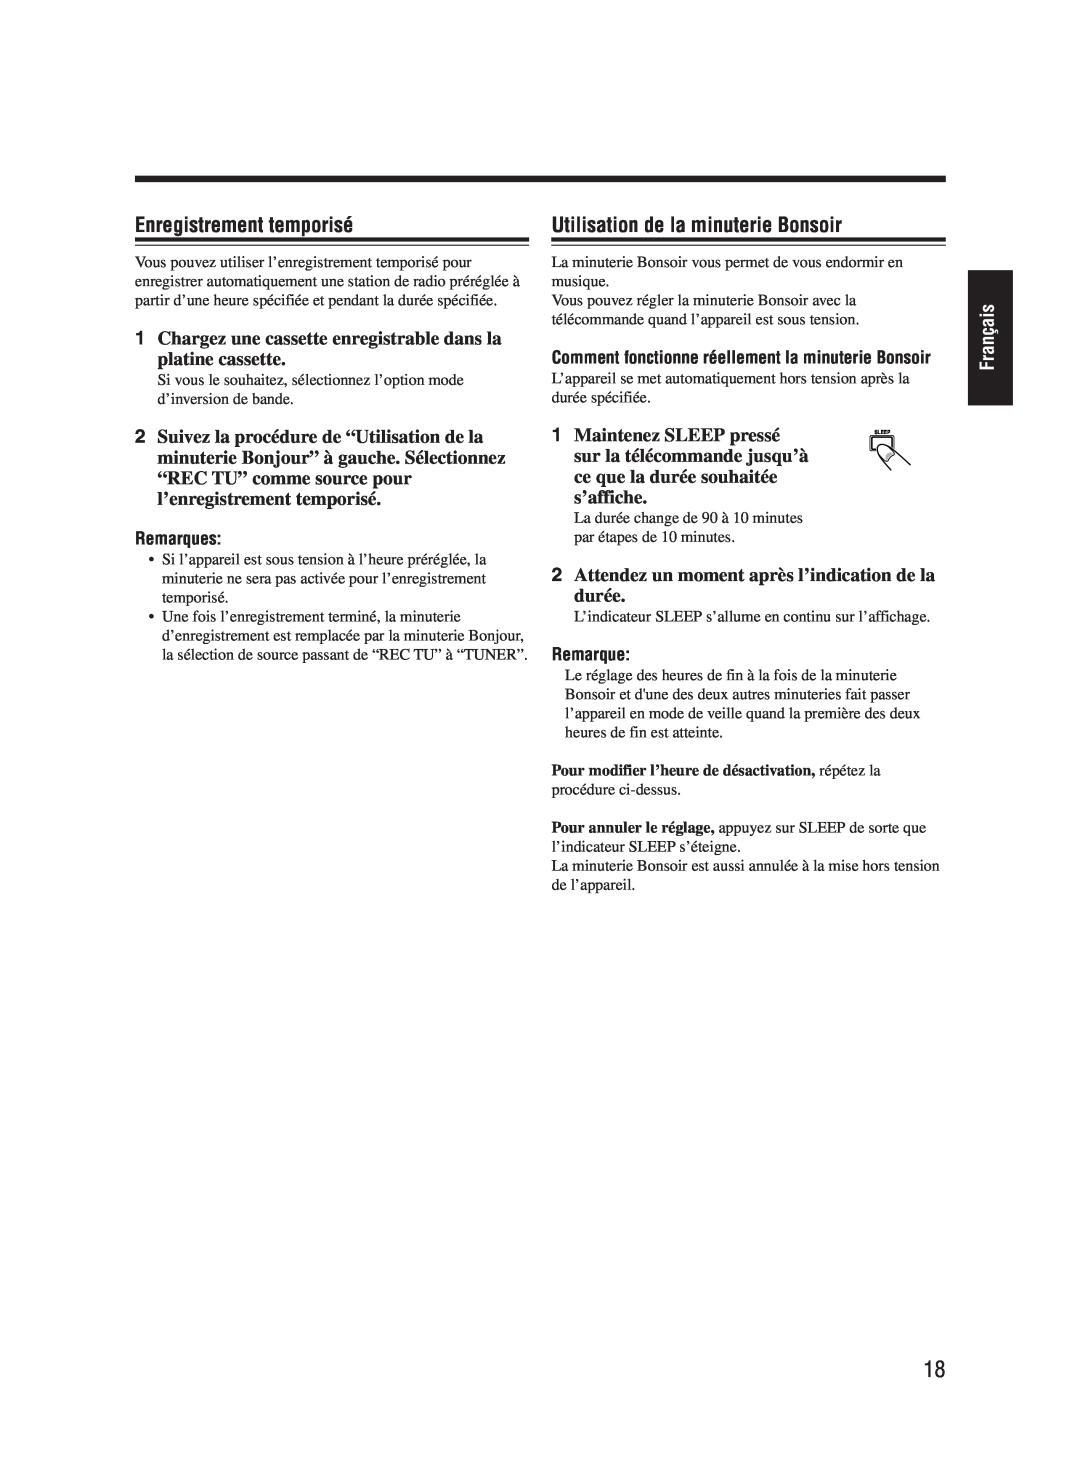 JVC UX-M55 manual Enregistrement temporisé, Utilisation de la minuterie Bonsoir, Français, Remarques 